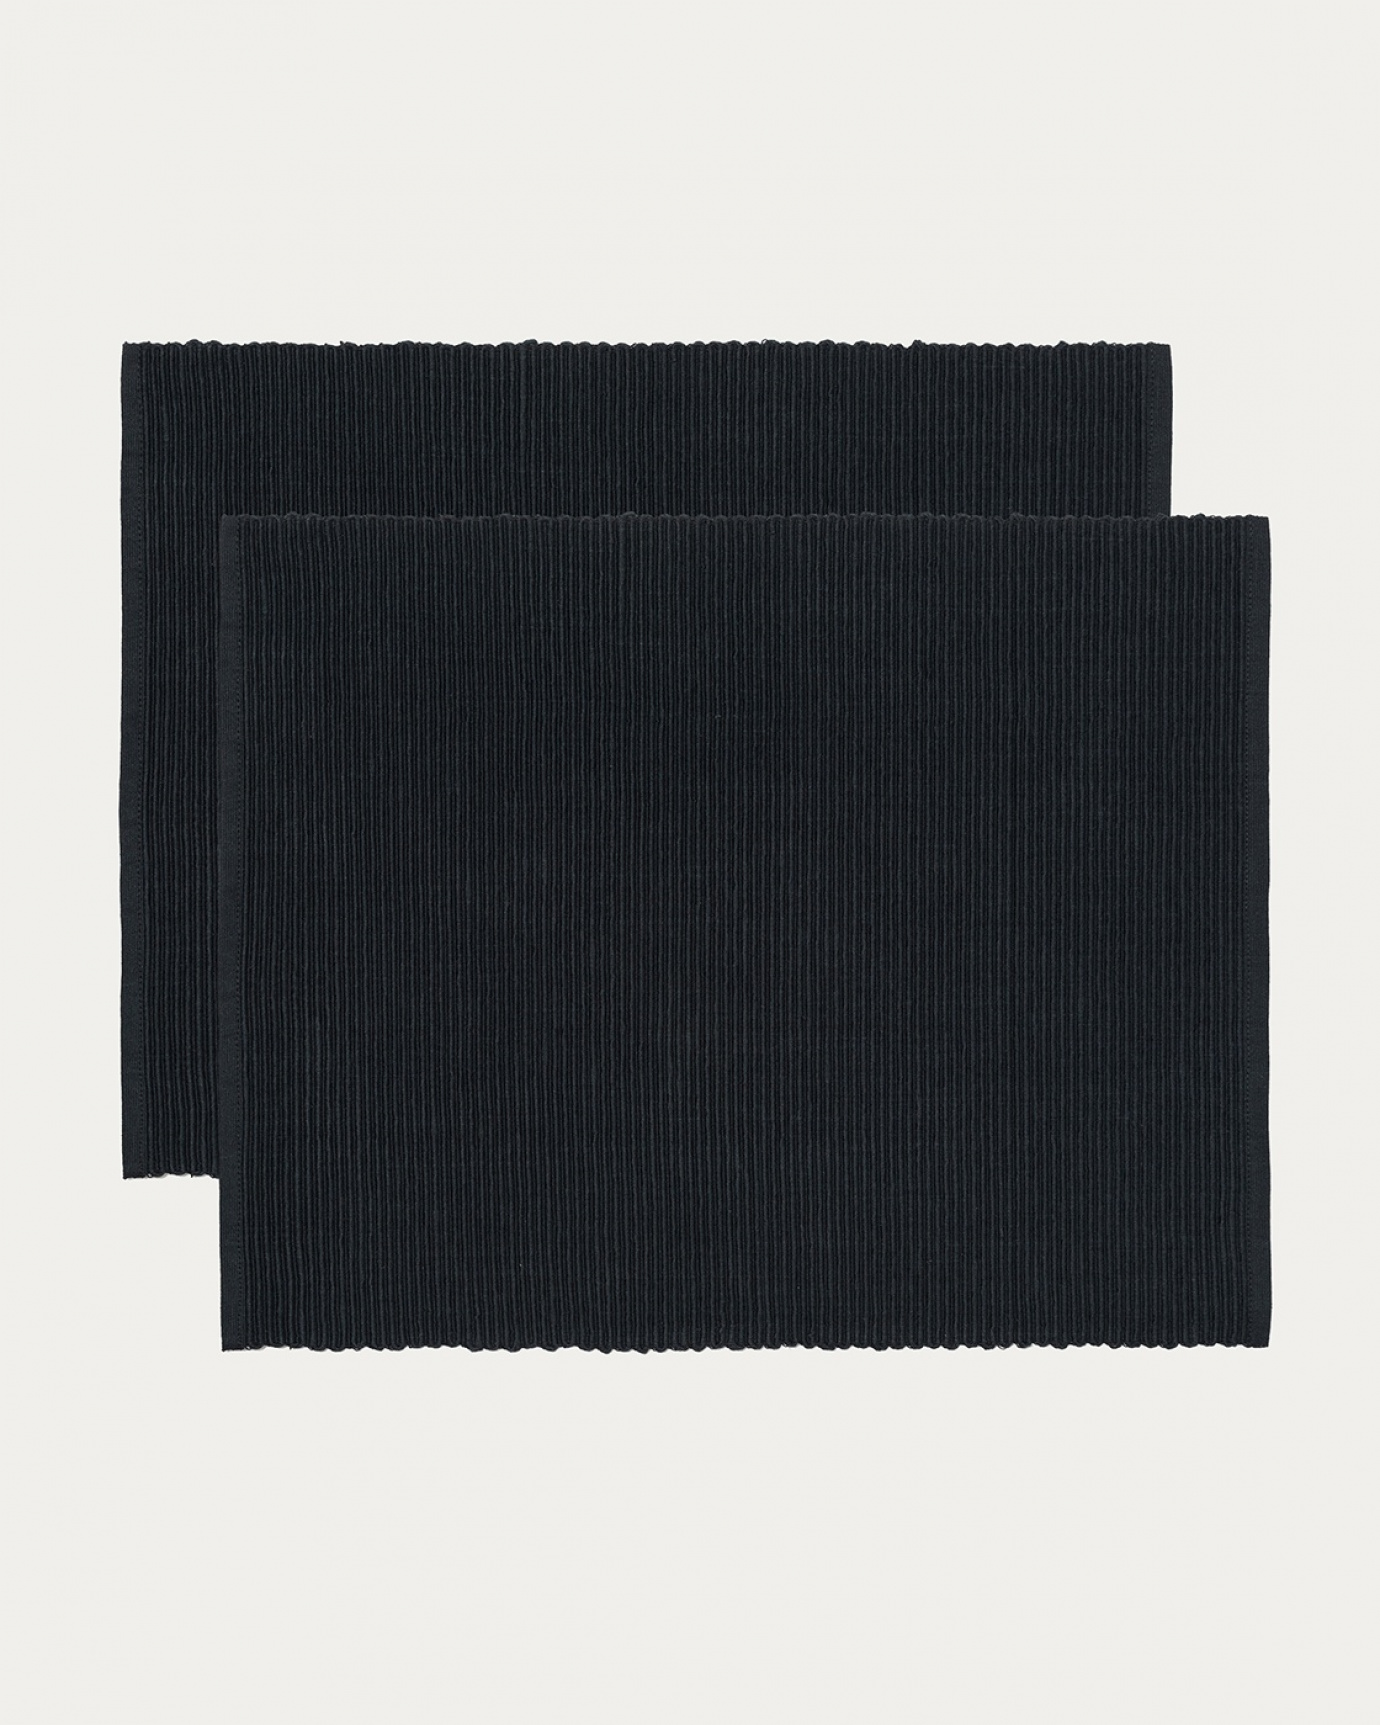 Image du produit set de table UNI noir en coton doux de qualité côtelée de LINUM DESIGN. Taille 35 x 46 cm et vendu en lot de 2.